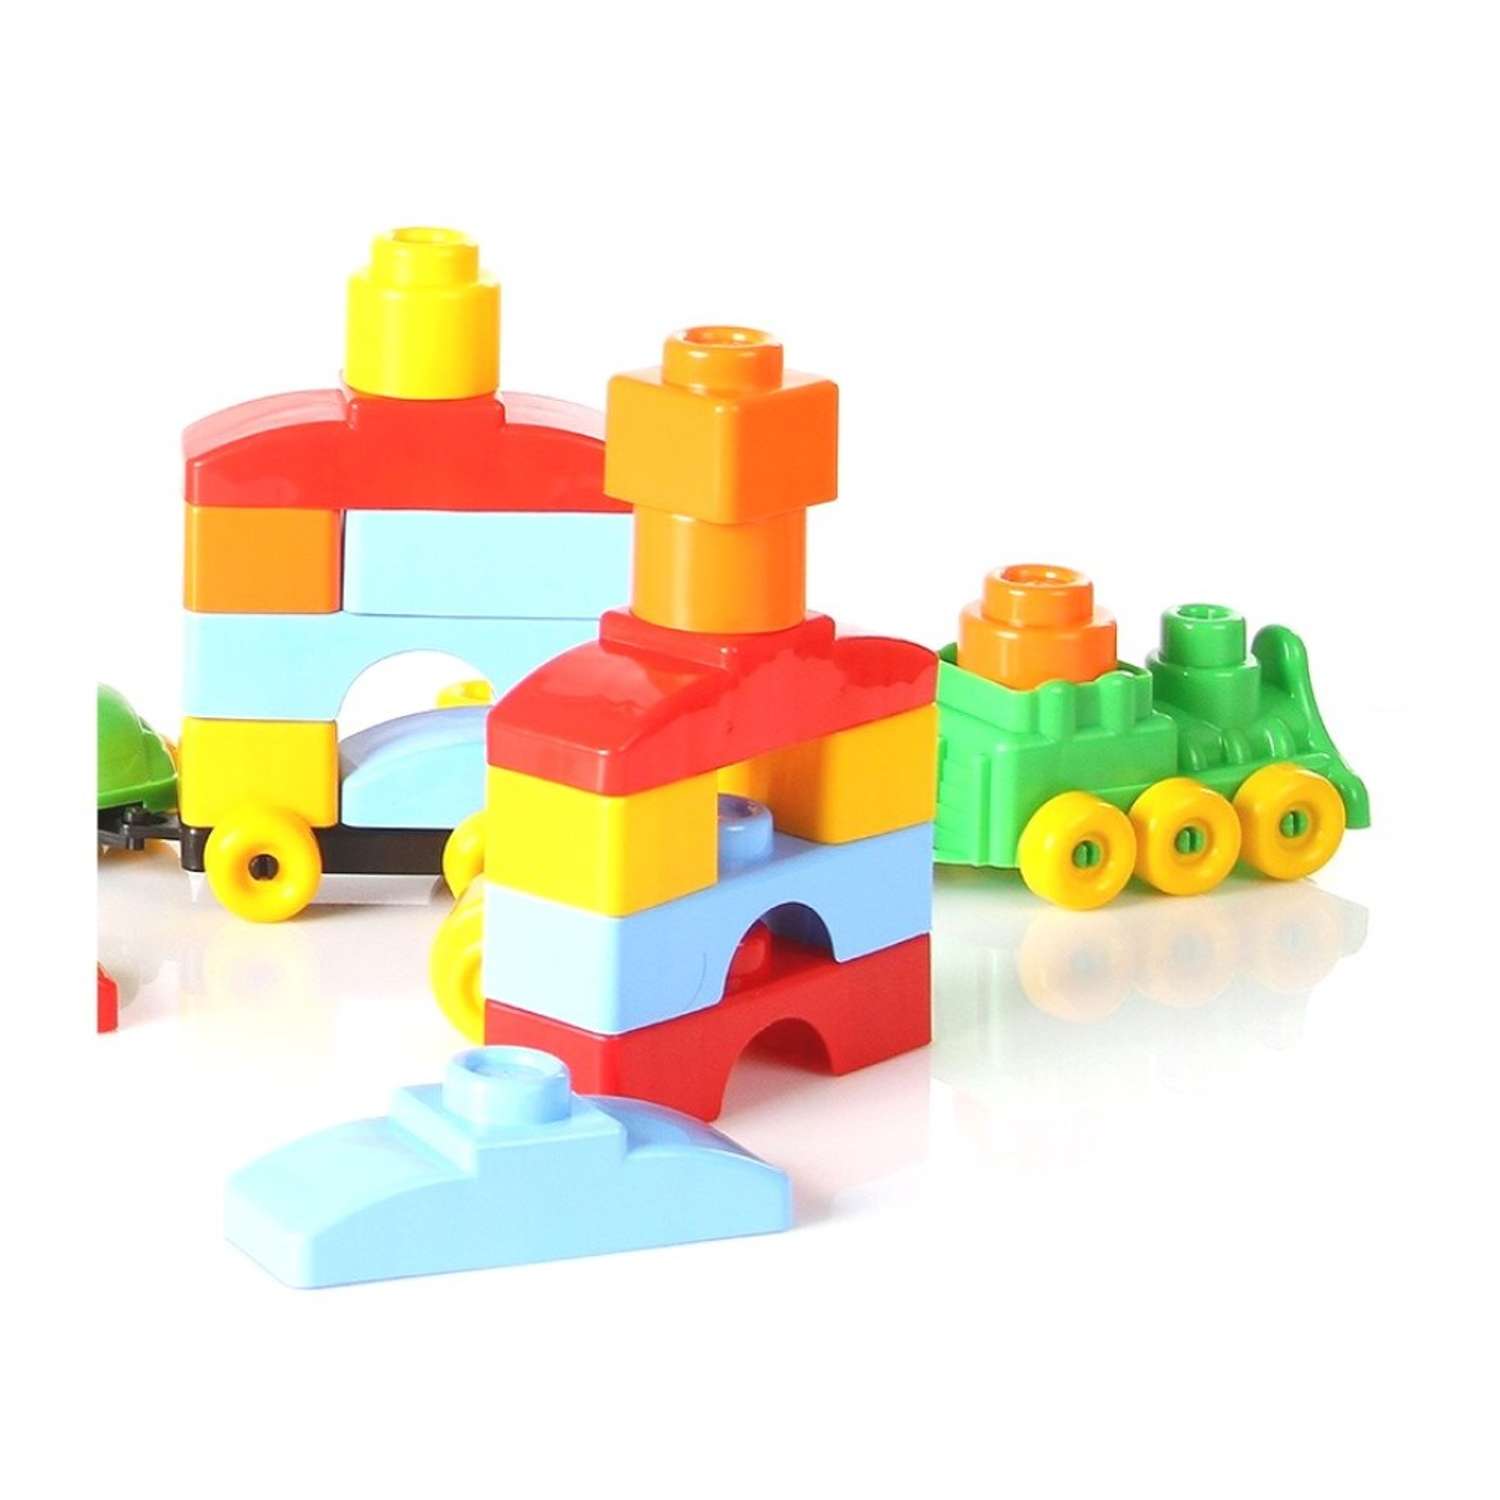 Развивающие игрушки БИПЛАНТ для малышей конструктор Кноп-Кнопыч 61 деталь + Сортер кубик малый + Команда КВА - фото 4